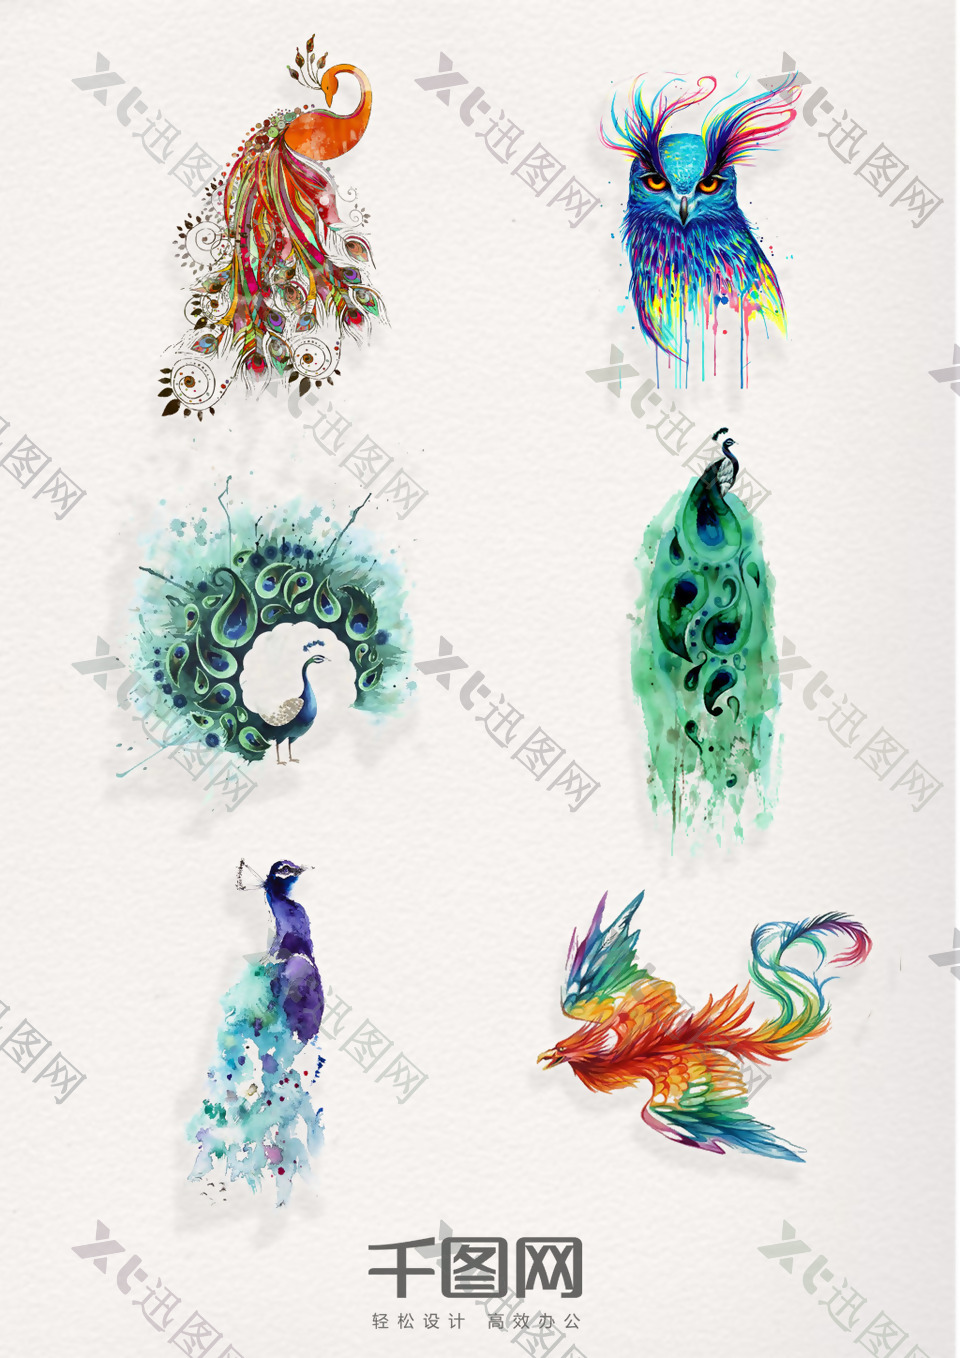 一组精美水彩动物飞鸟设计素材